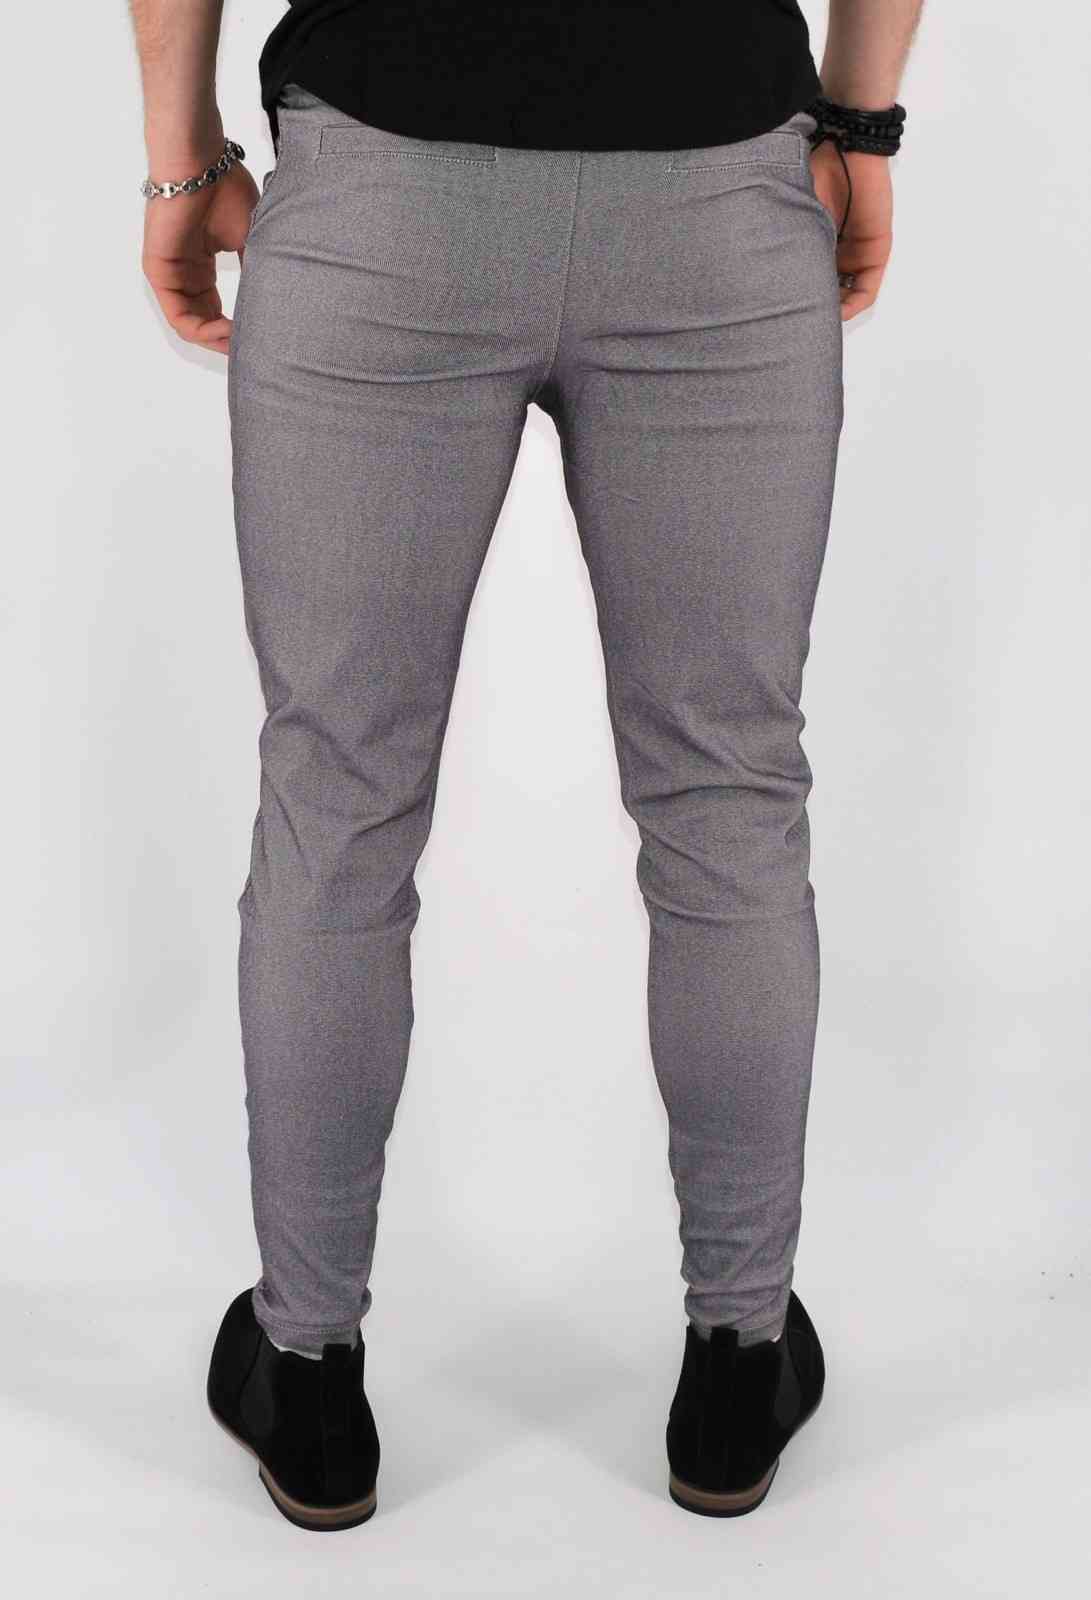 Mentex - Pantalon chino slim gris confortable homme fashio